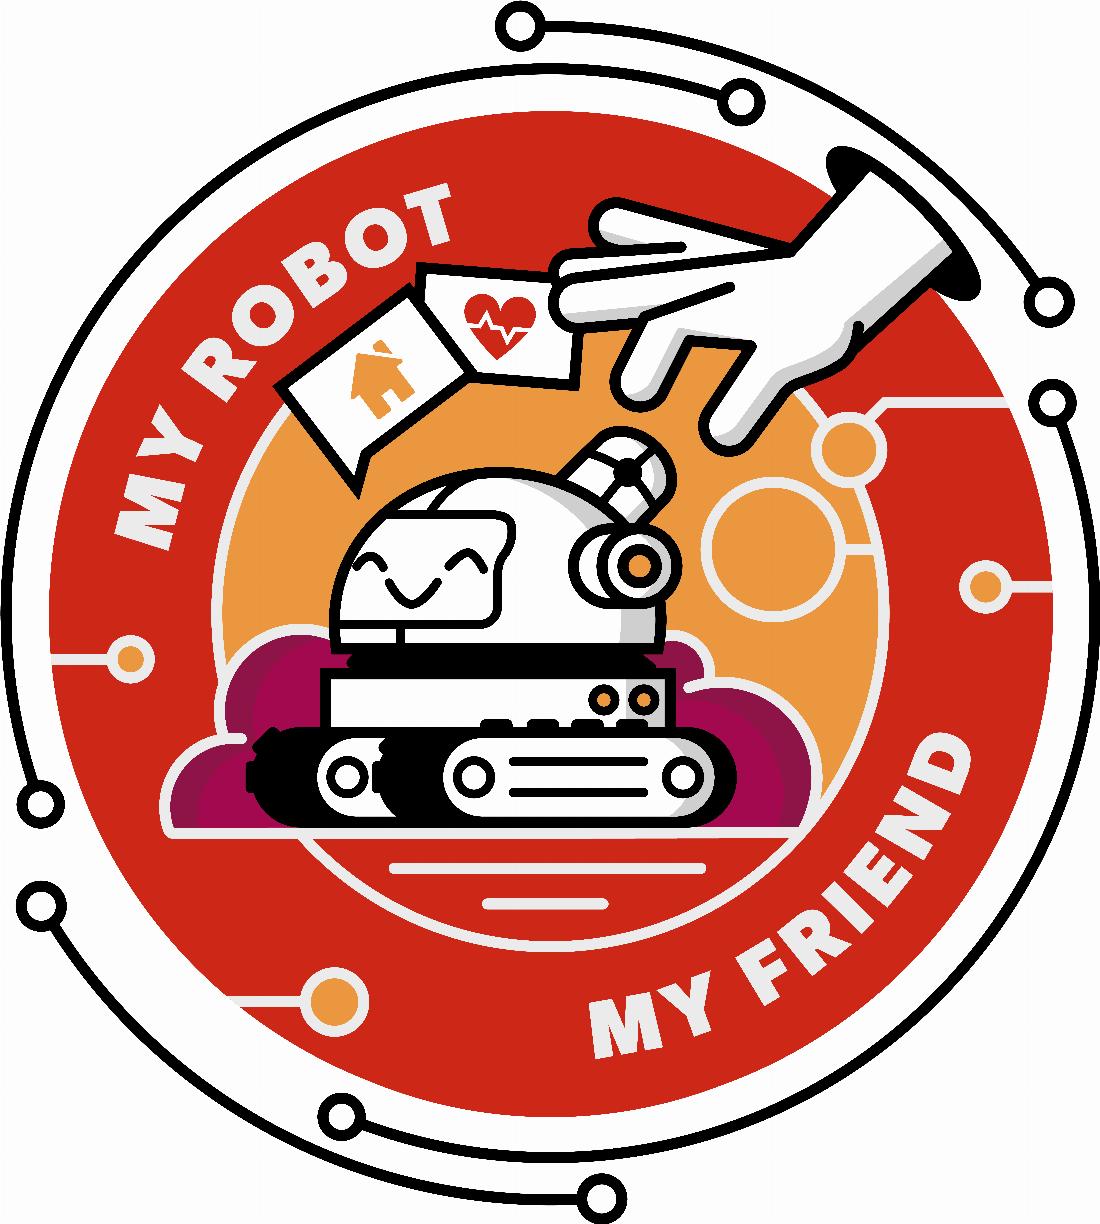 “My Robot My Friend” ist das Thema der WRO 2022